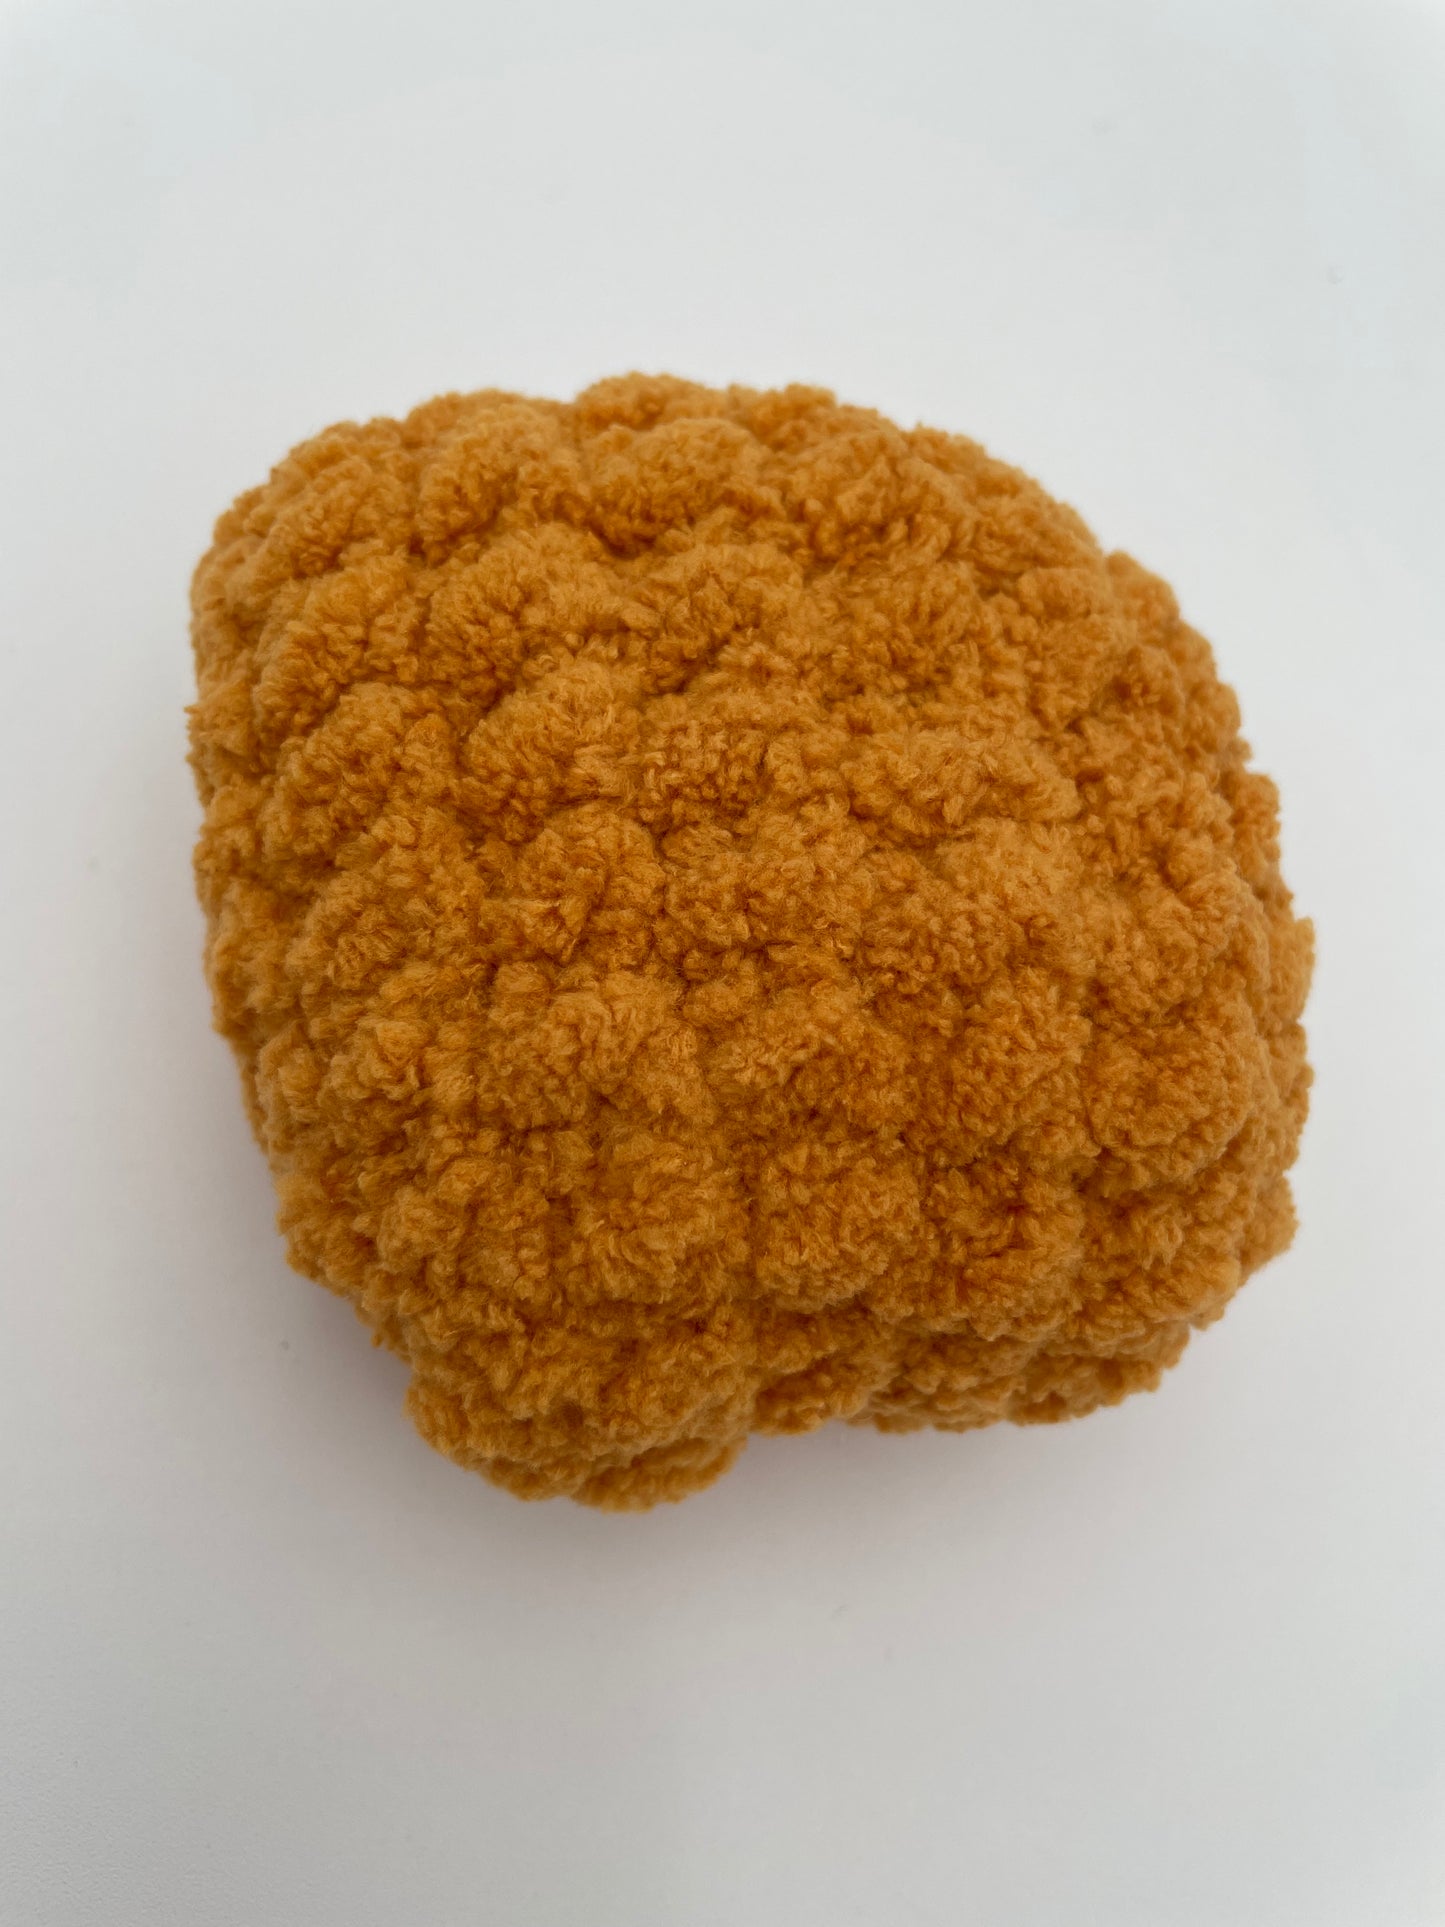 Munchies - XL Chicken Nuggets